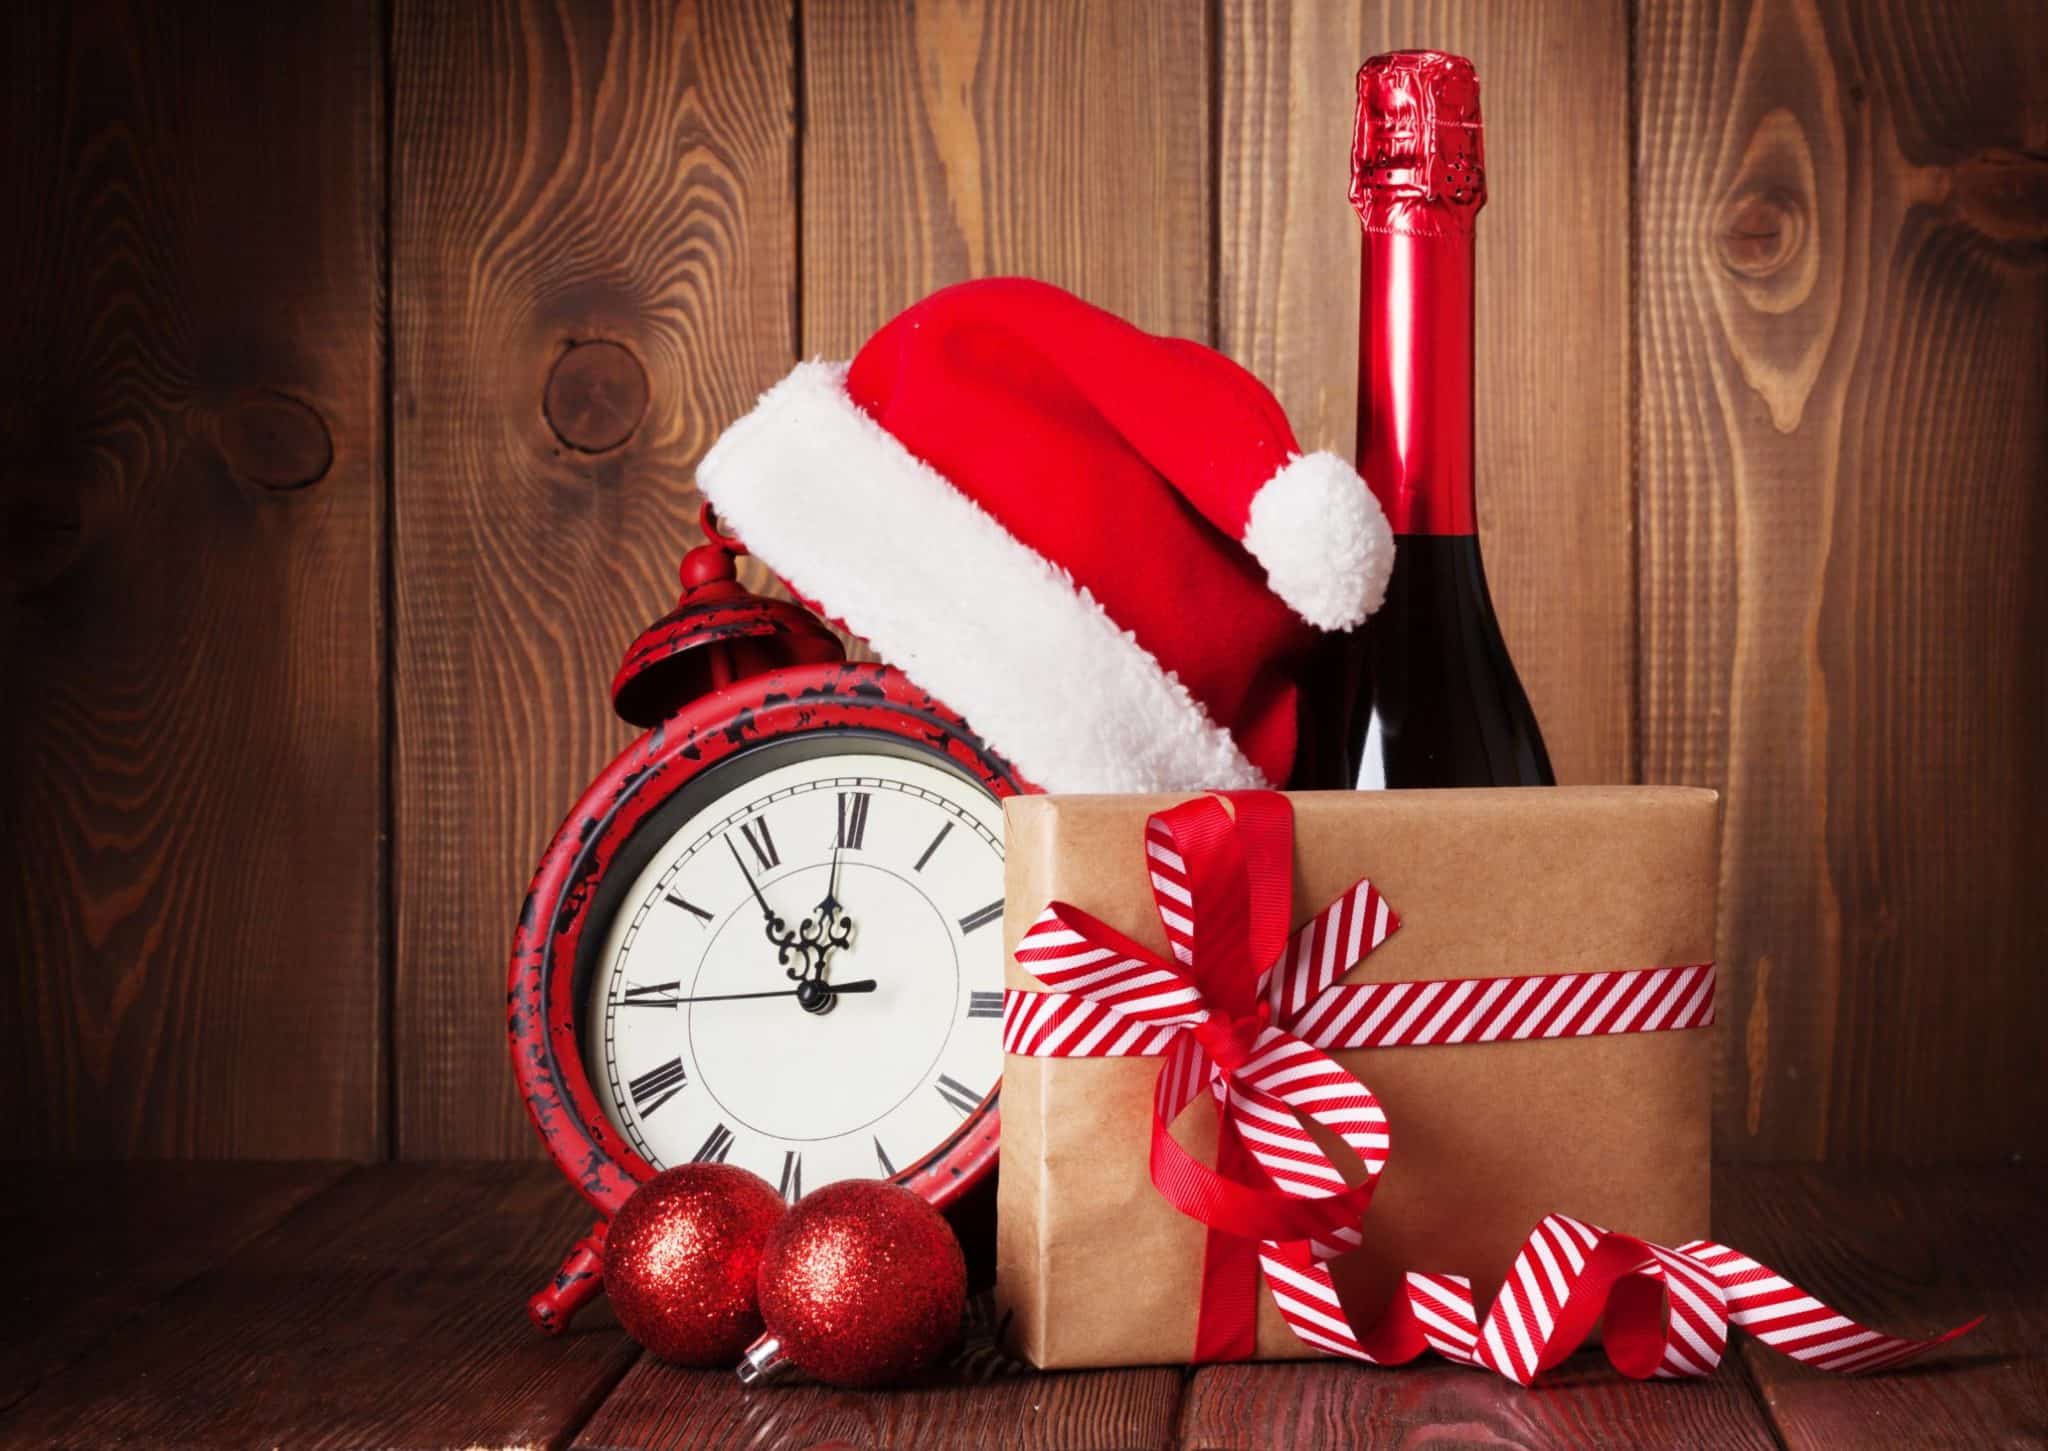 Coffret Arômes du vin : idée cadeau fête des pères et Noël